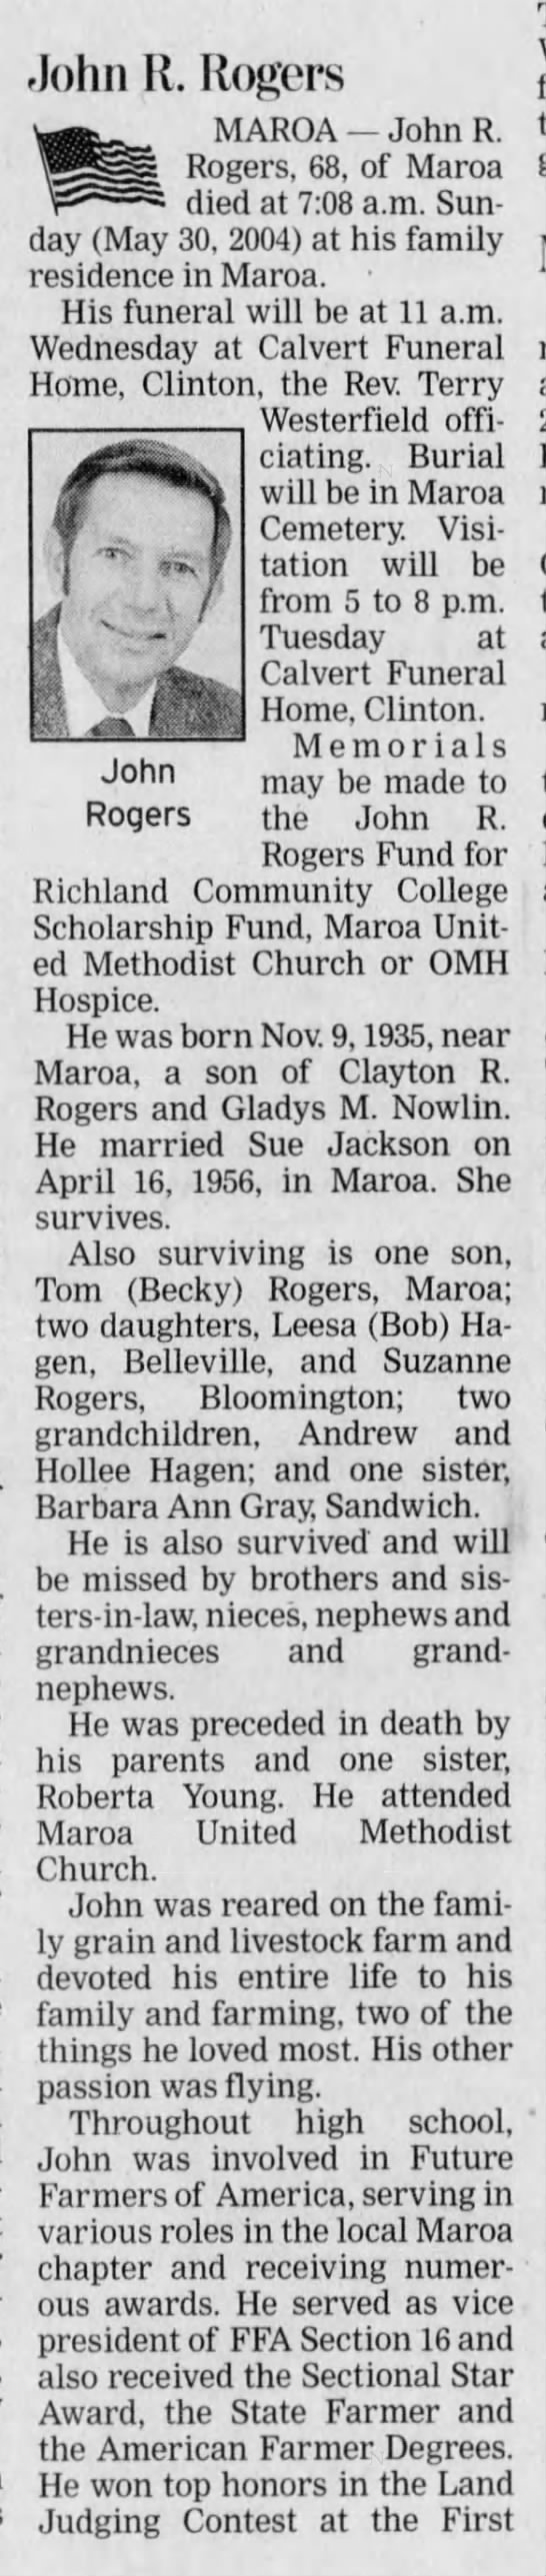 Obituary: John R. Rogers - Part 1 - 